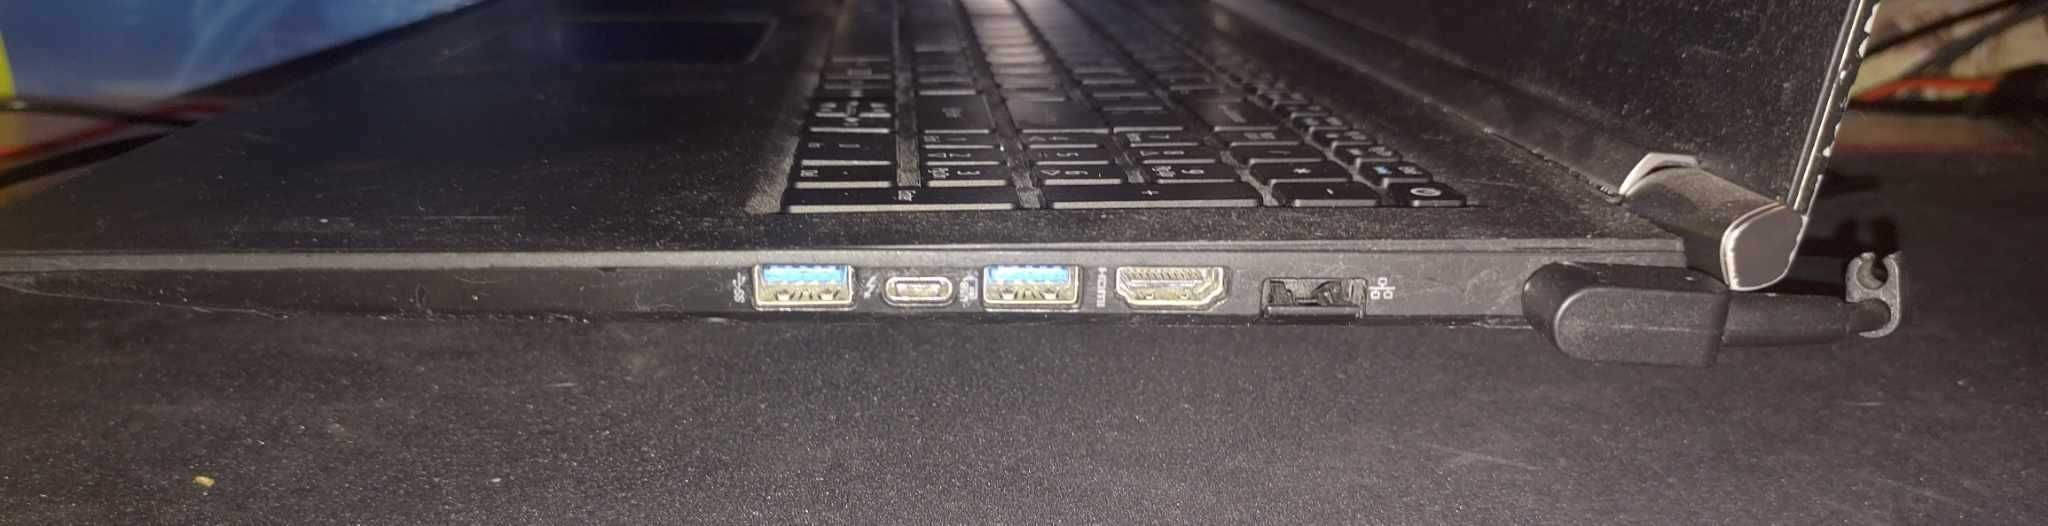 Laptop Acer Nitro V